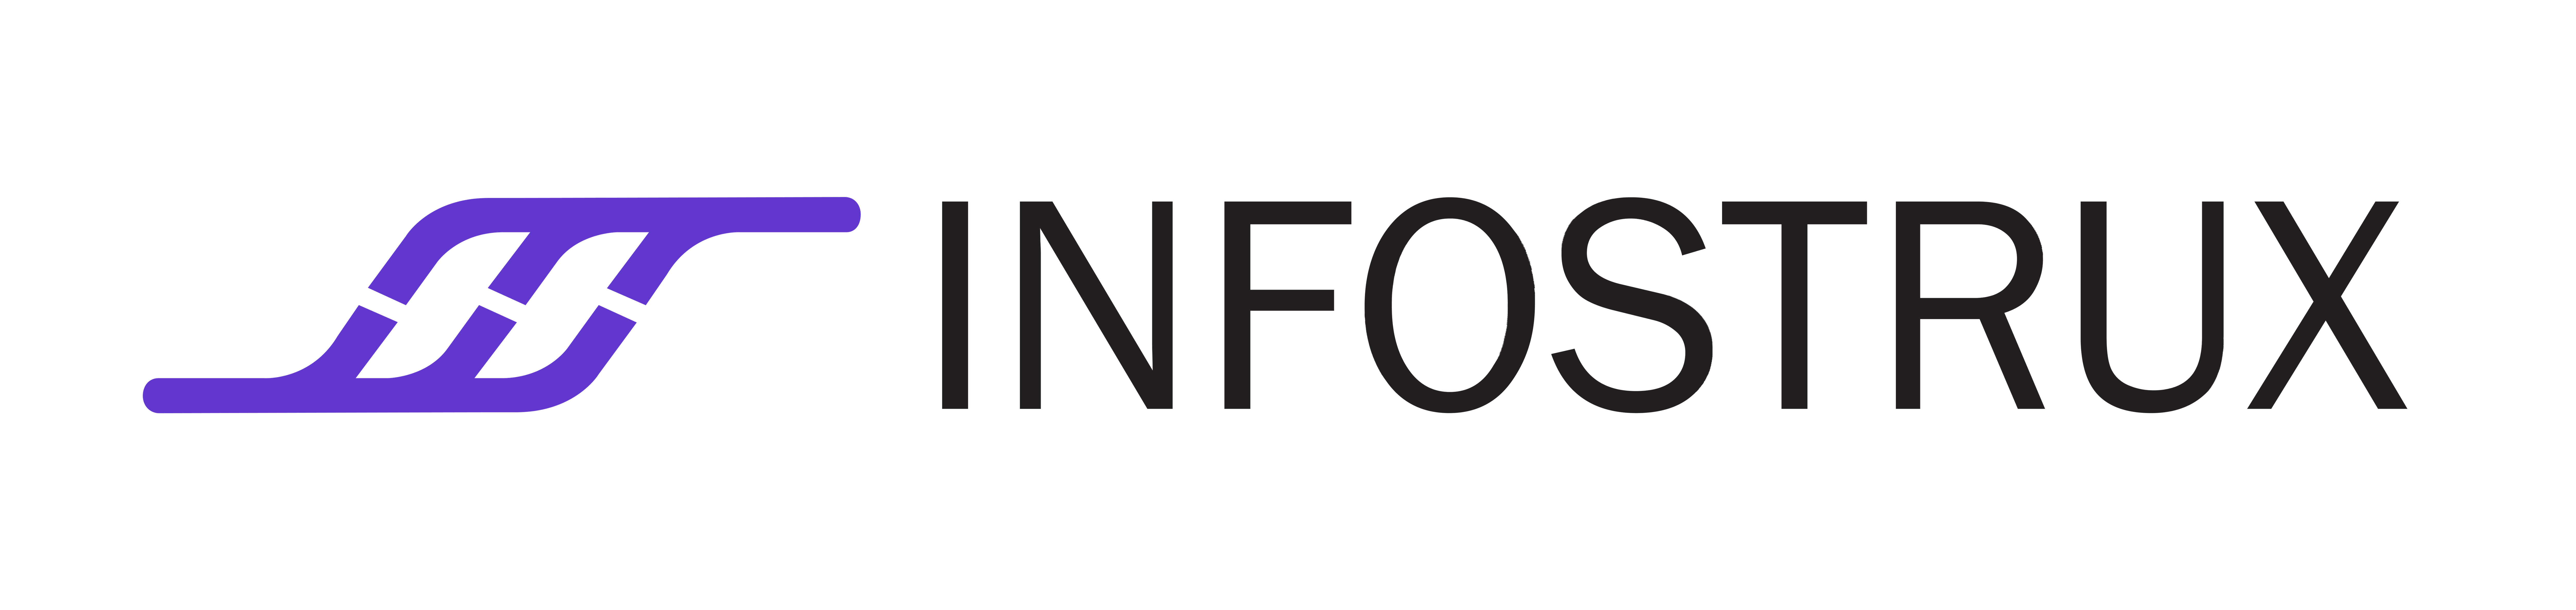 Infostrux_logo